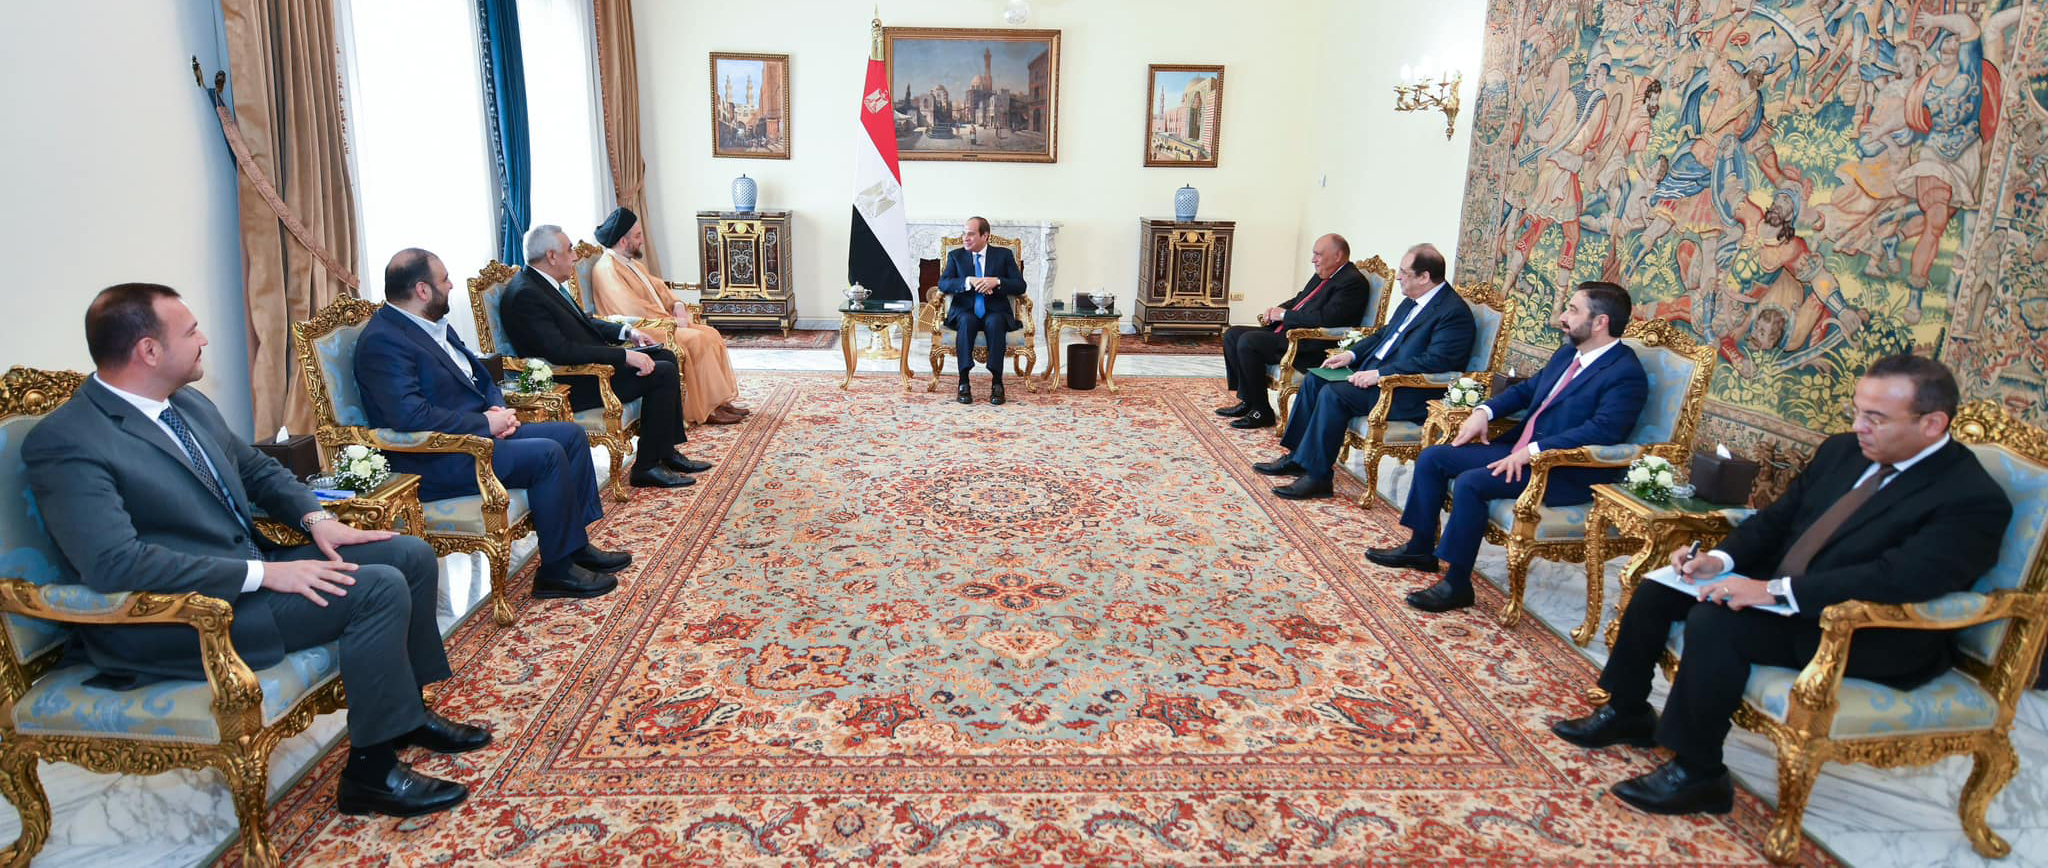 الرئيس المصري يلتقي رئيس تيار الحكمة العراقي